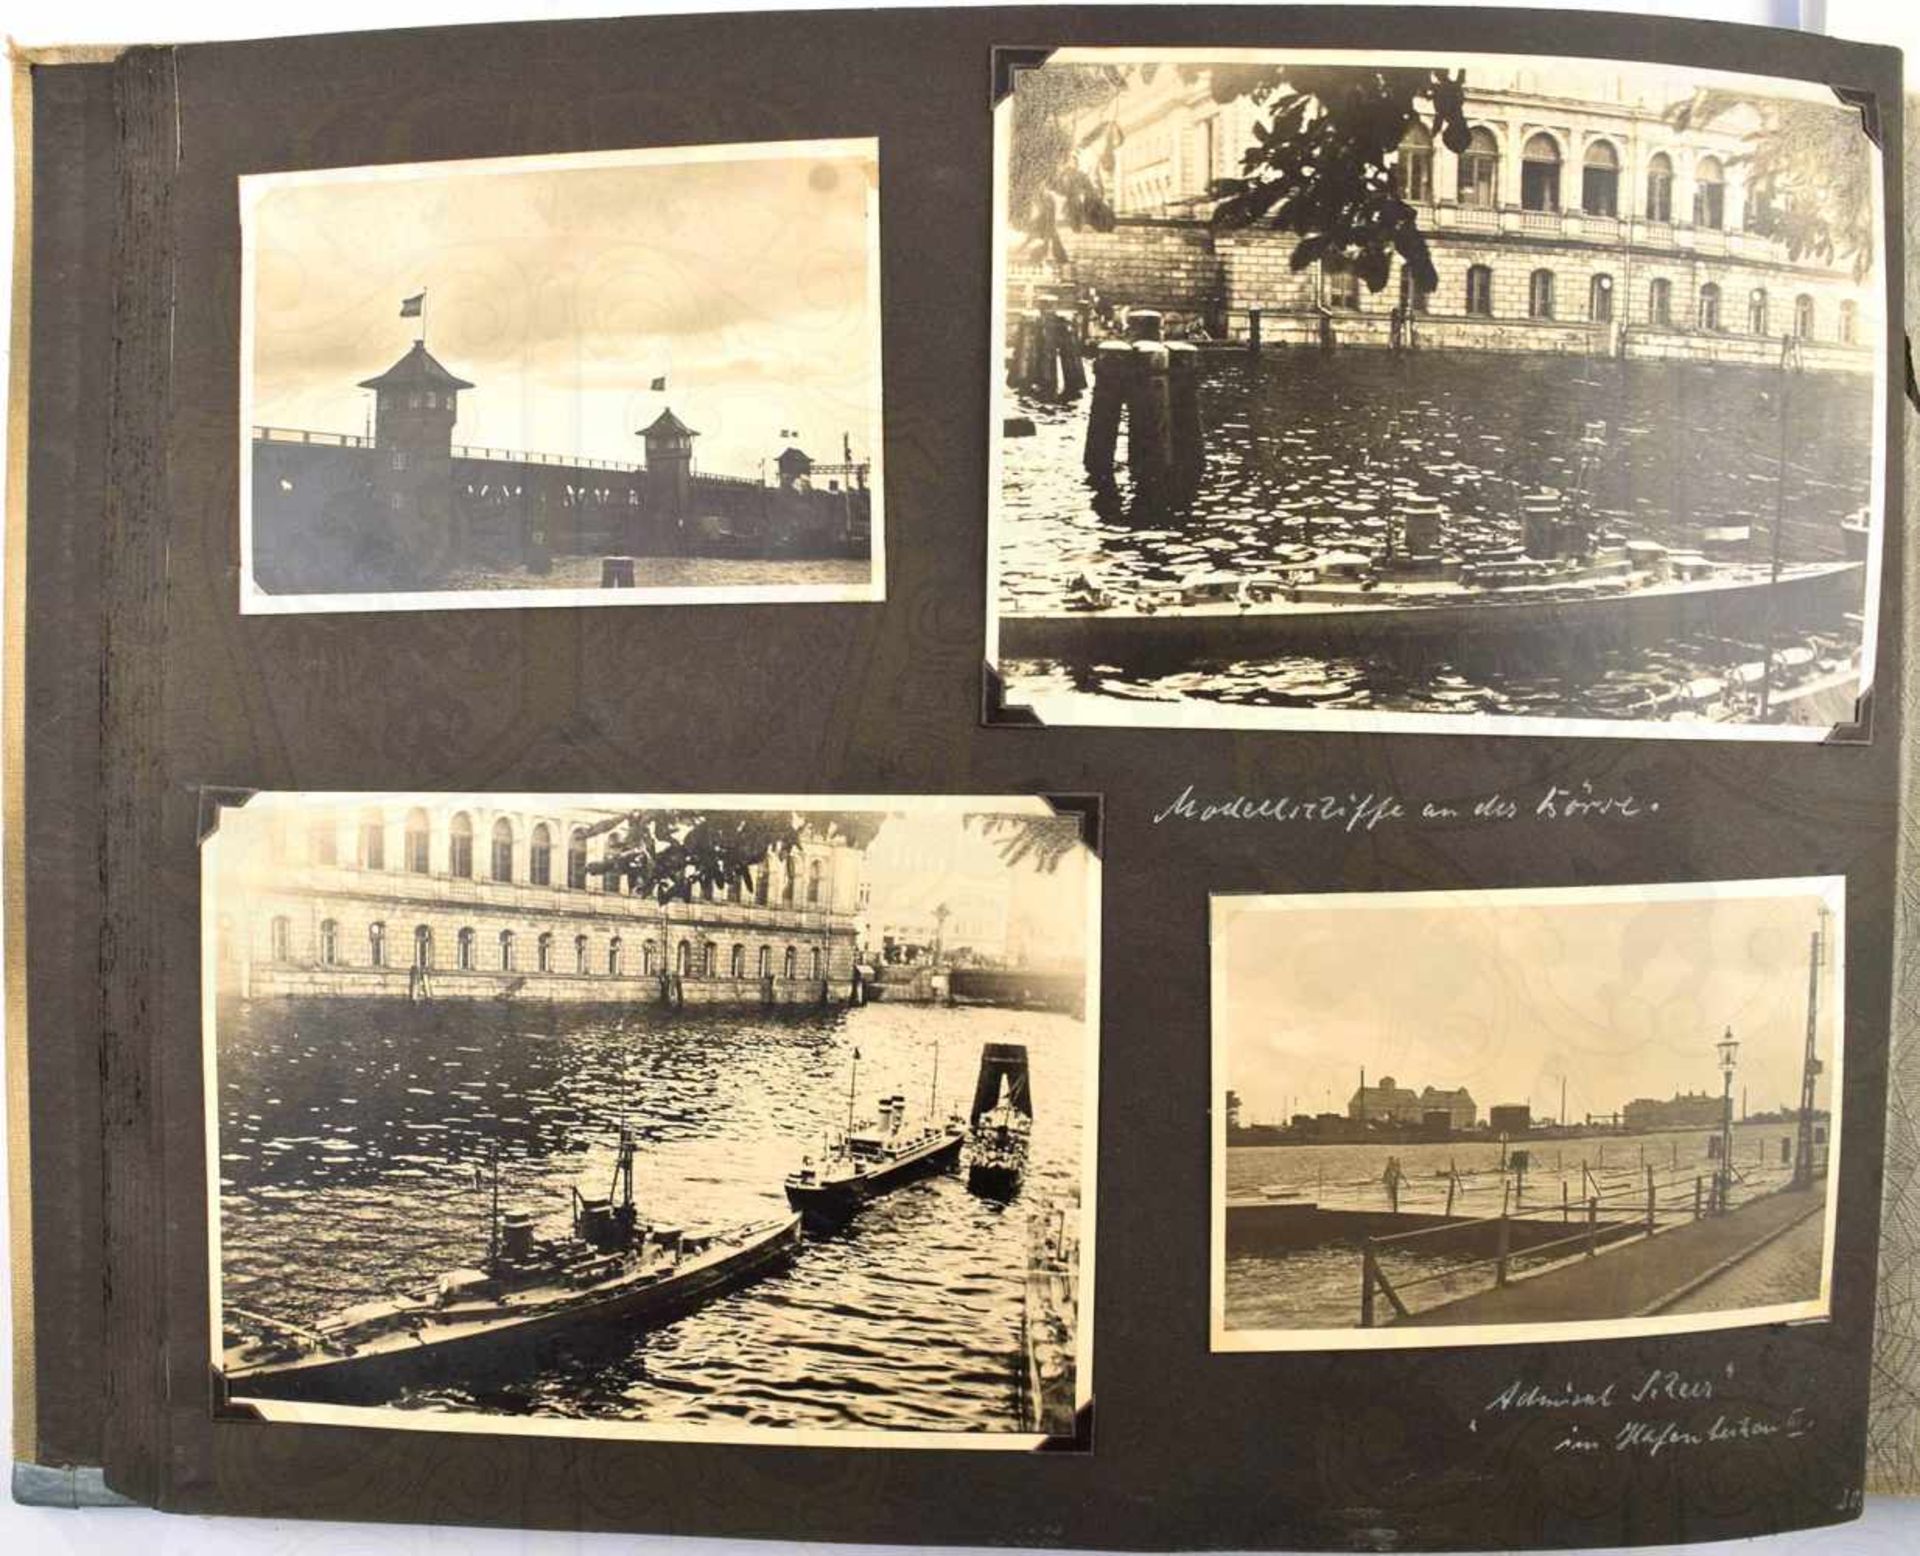 FOTOALBUM REISE DURCH DEUTSCHLAND, 1935, m. 160 Fotos, davon 60 Fotos Ostpreußen, Samland-Küste, - Bild 3 aus 5